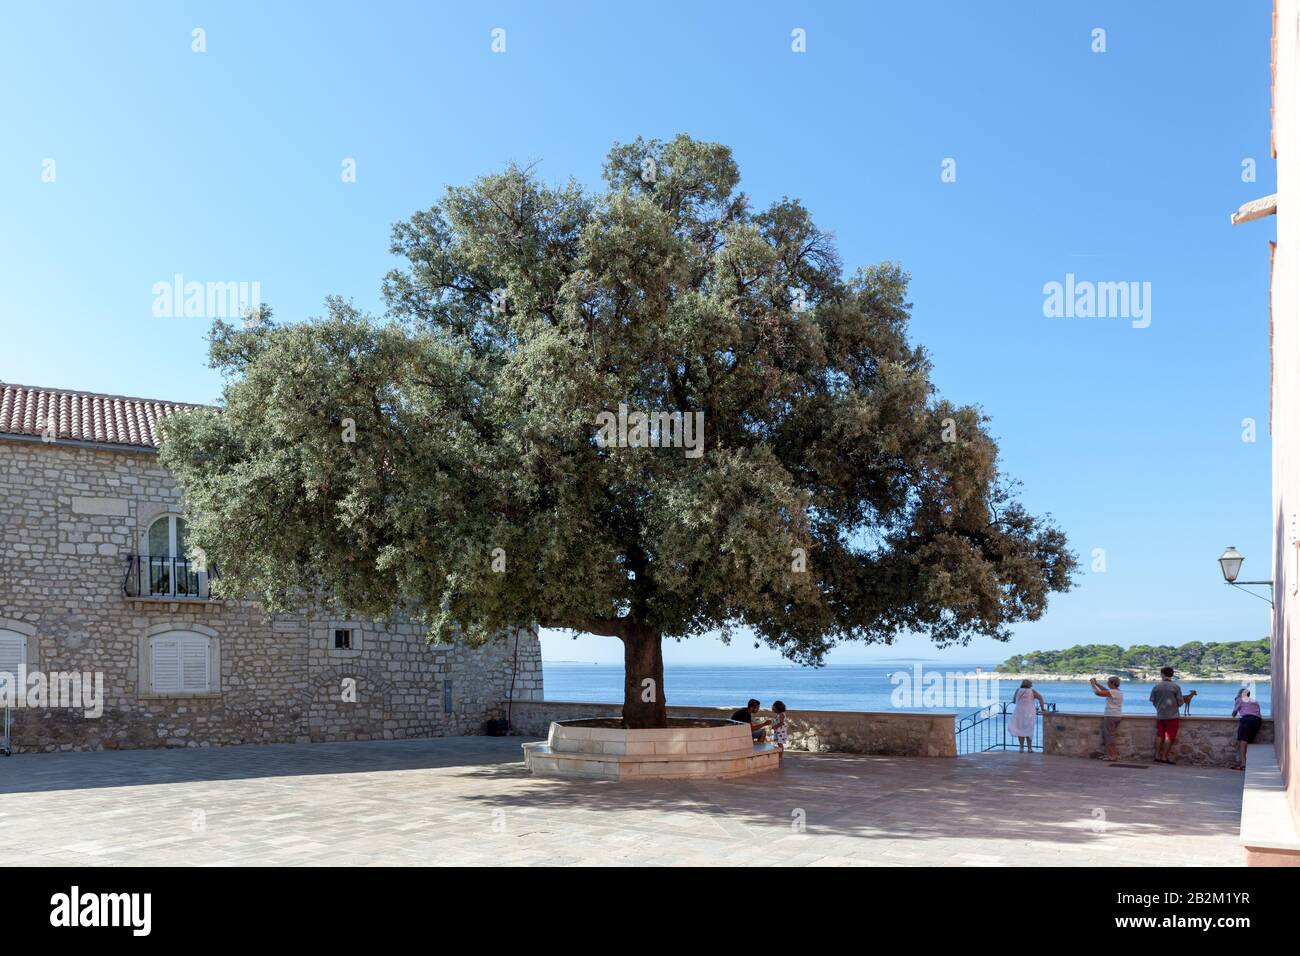 Der Baum der Freiheit, eine große Steineiche in Trg Slobode (Platz Der Freiheit). Rab, Kroatien. Stockfoto